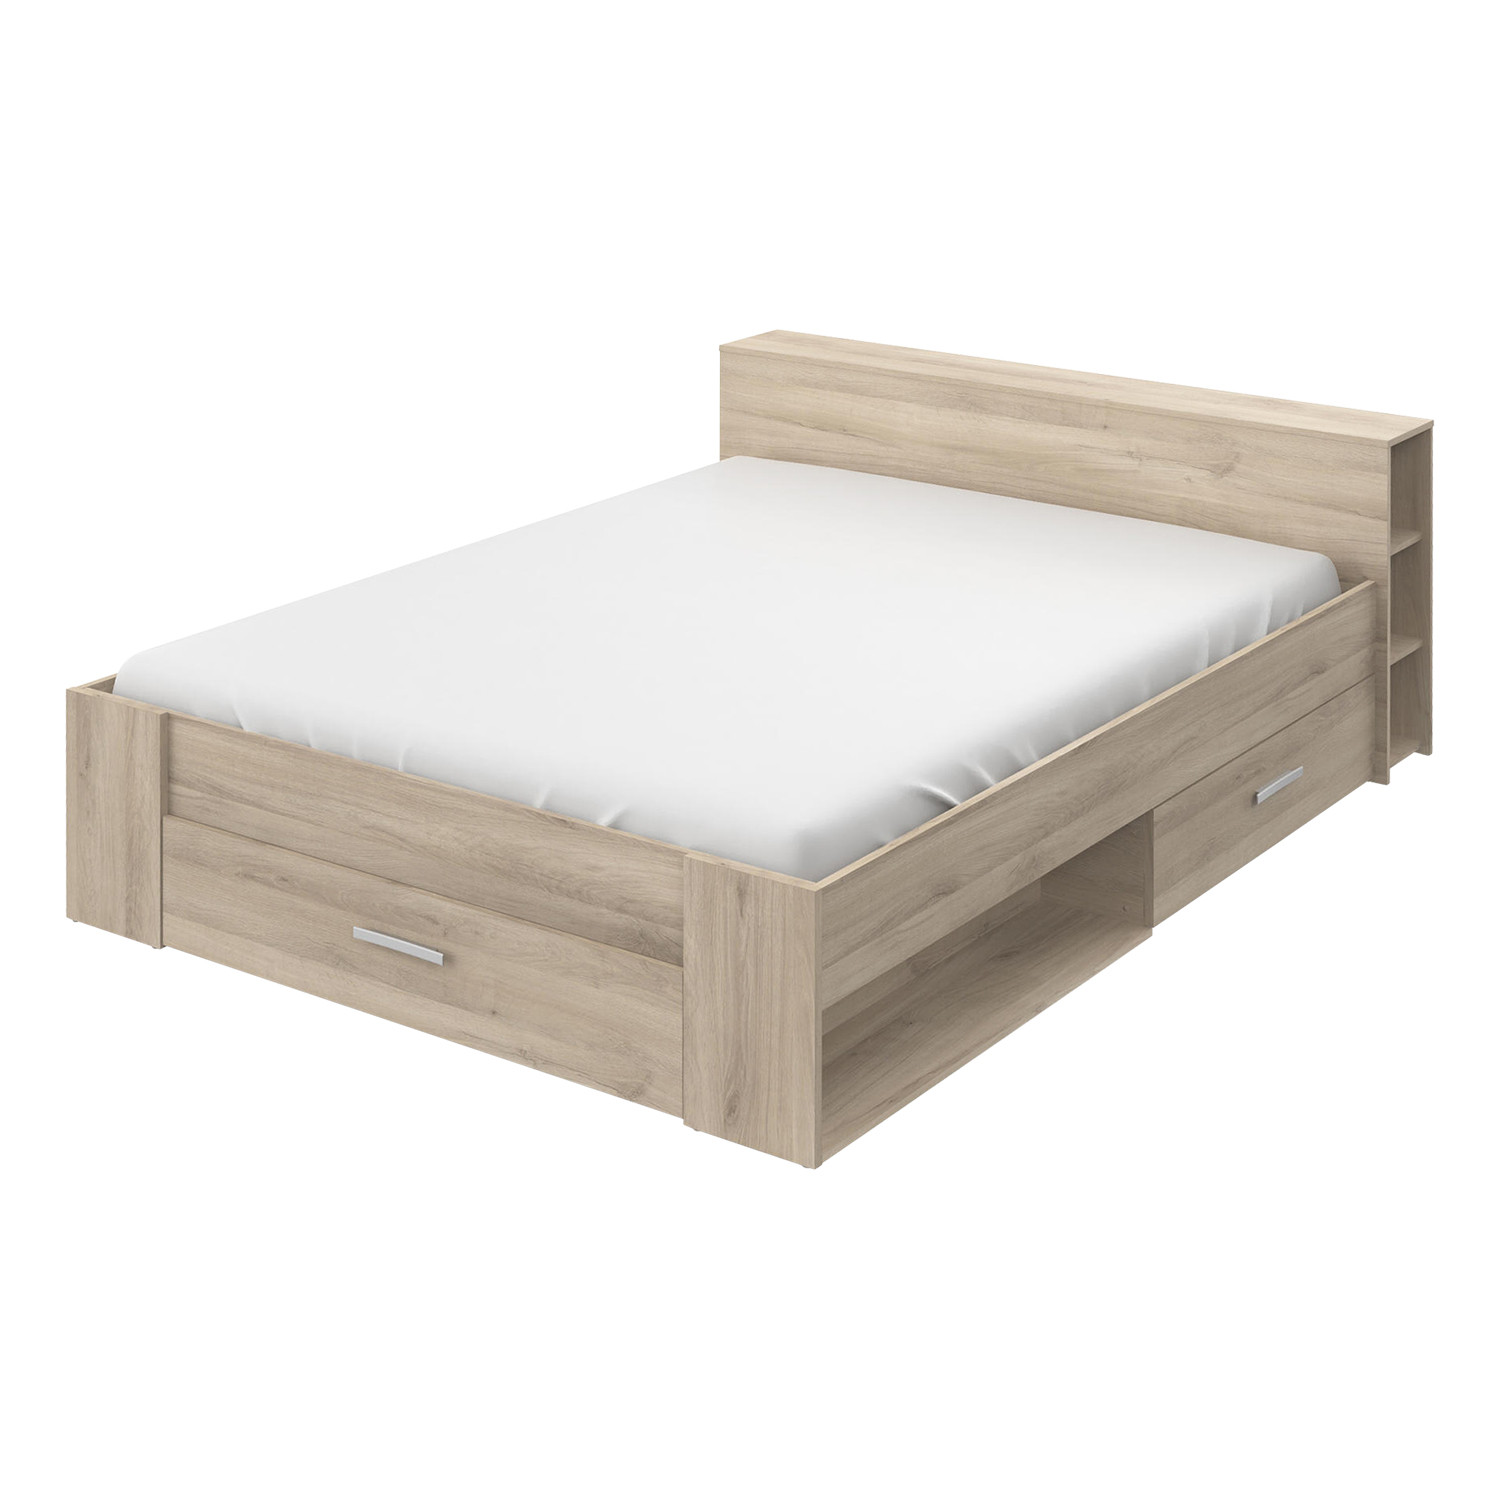 IDEA Многофункциональная кровать 160x200 POCKET дуб